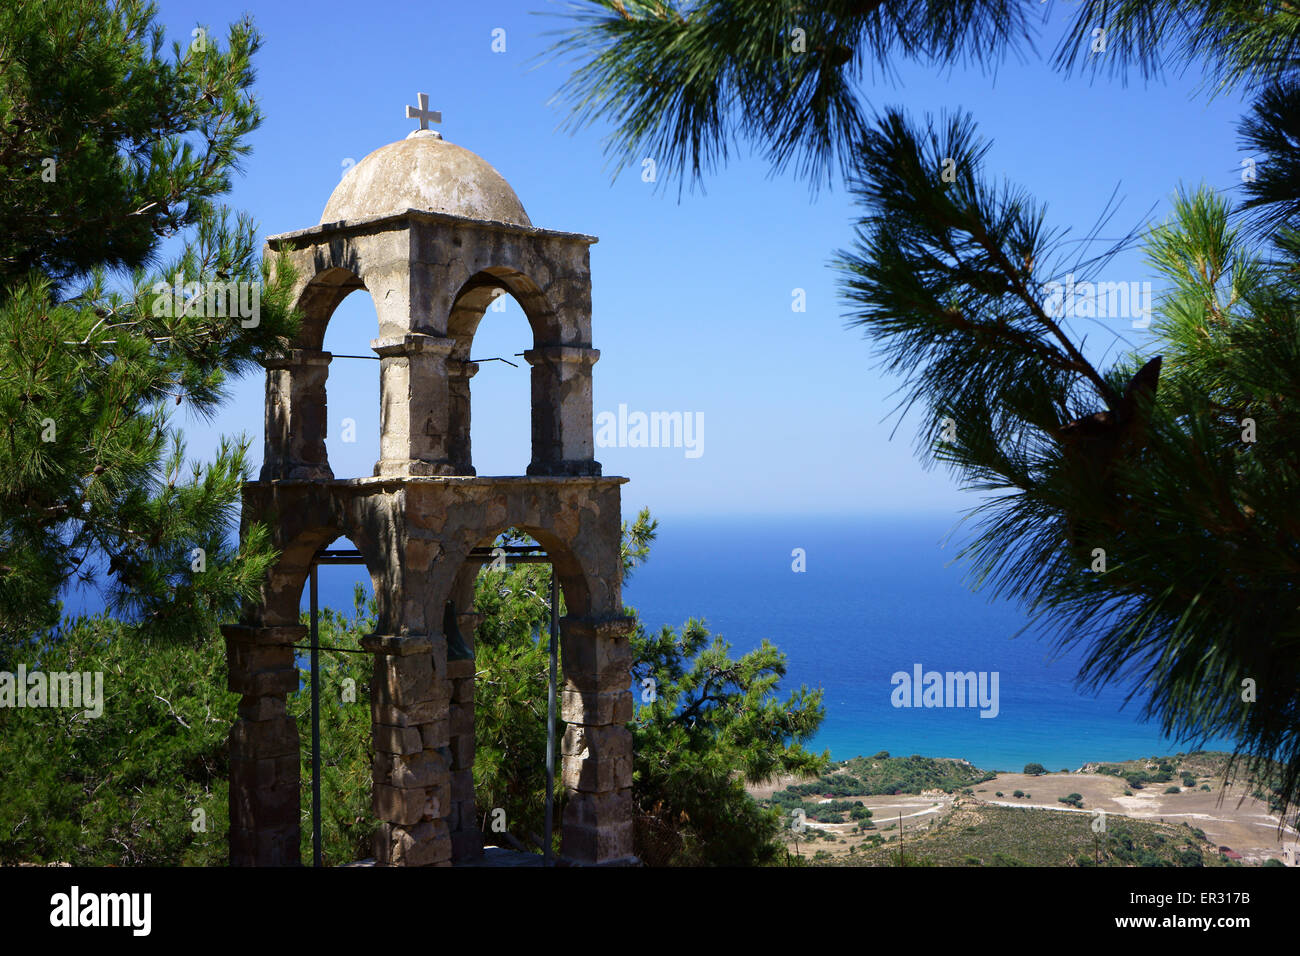 Campanile della chiesa ortodossa greca Monastero di Agios Ioannis Thyminaos, isola di Kos, Grecia Foto Stock